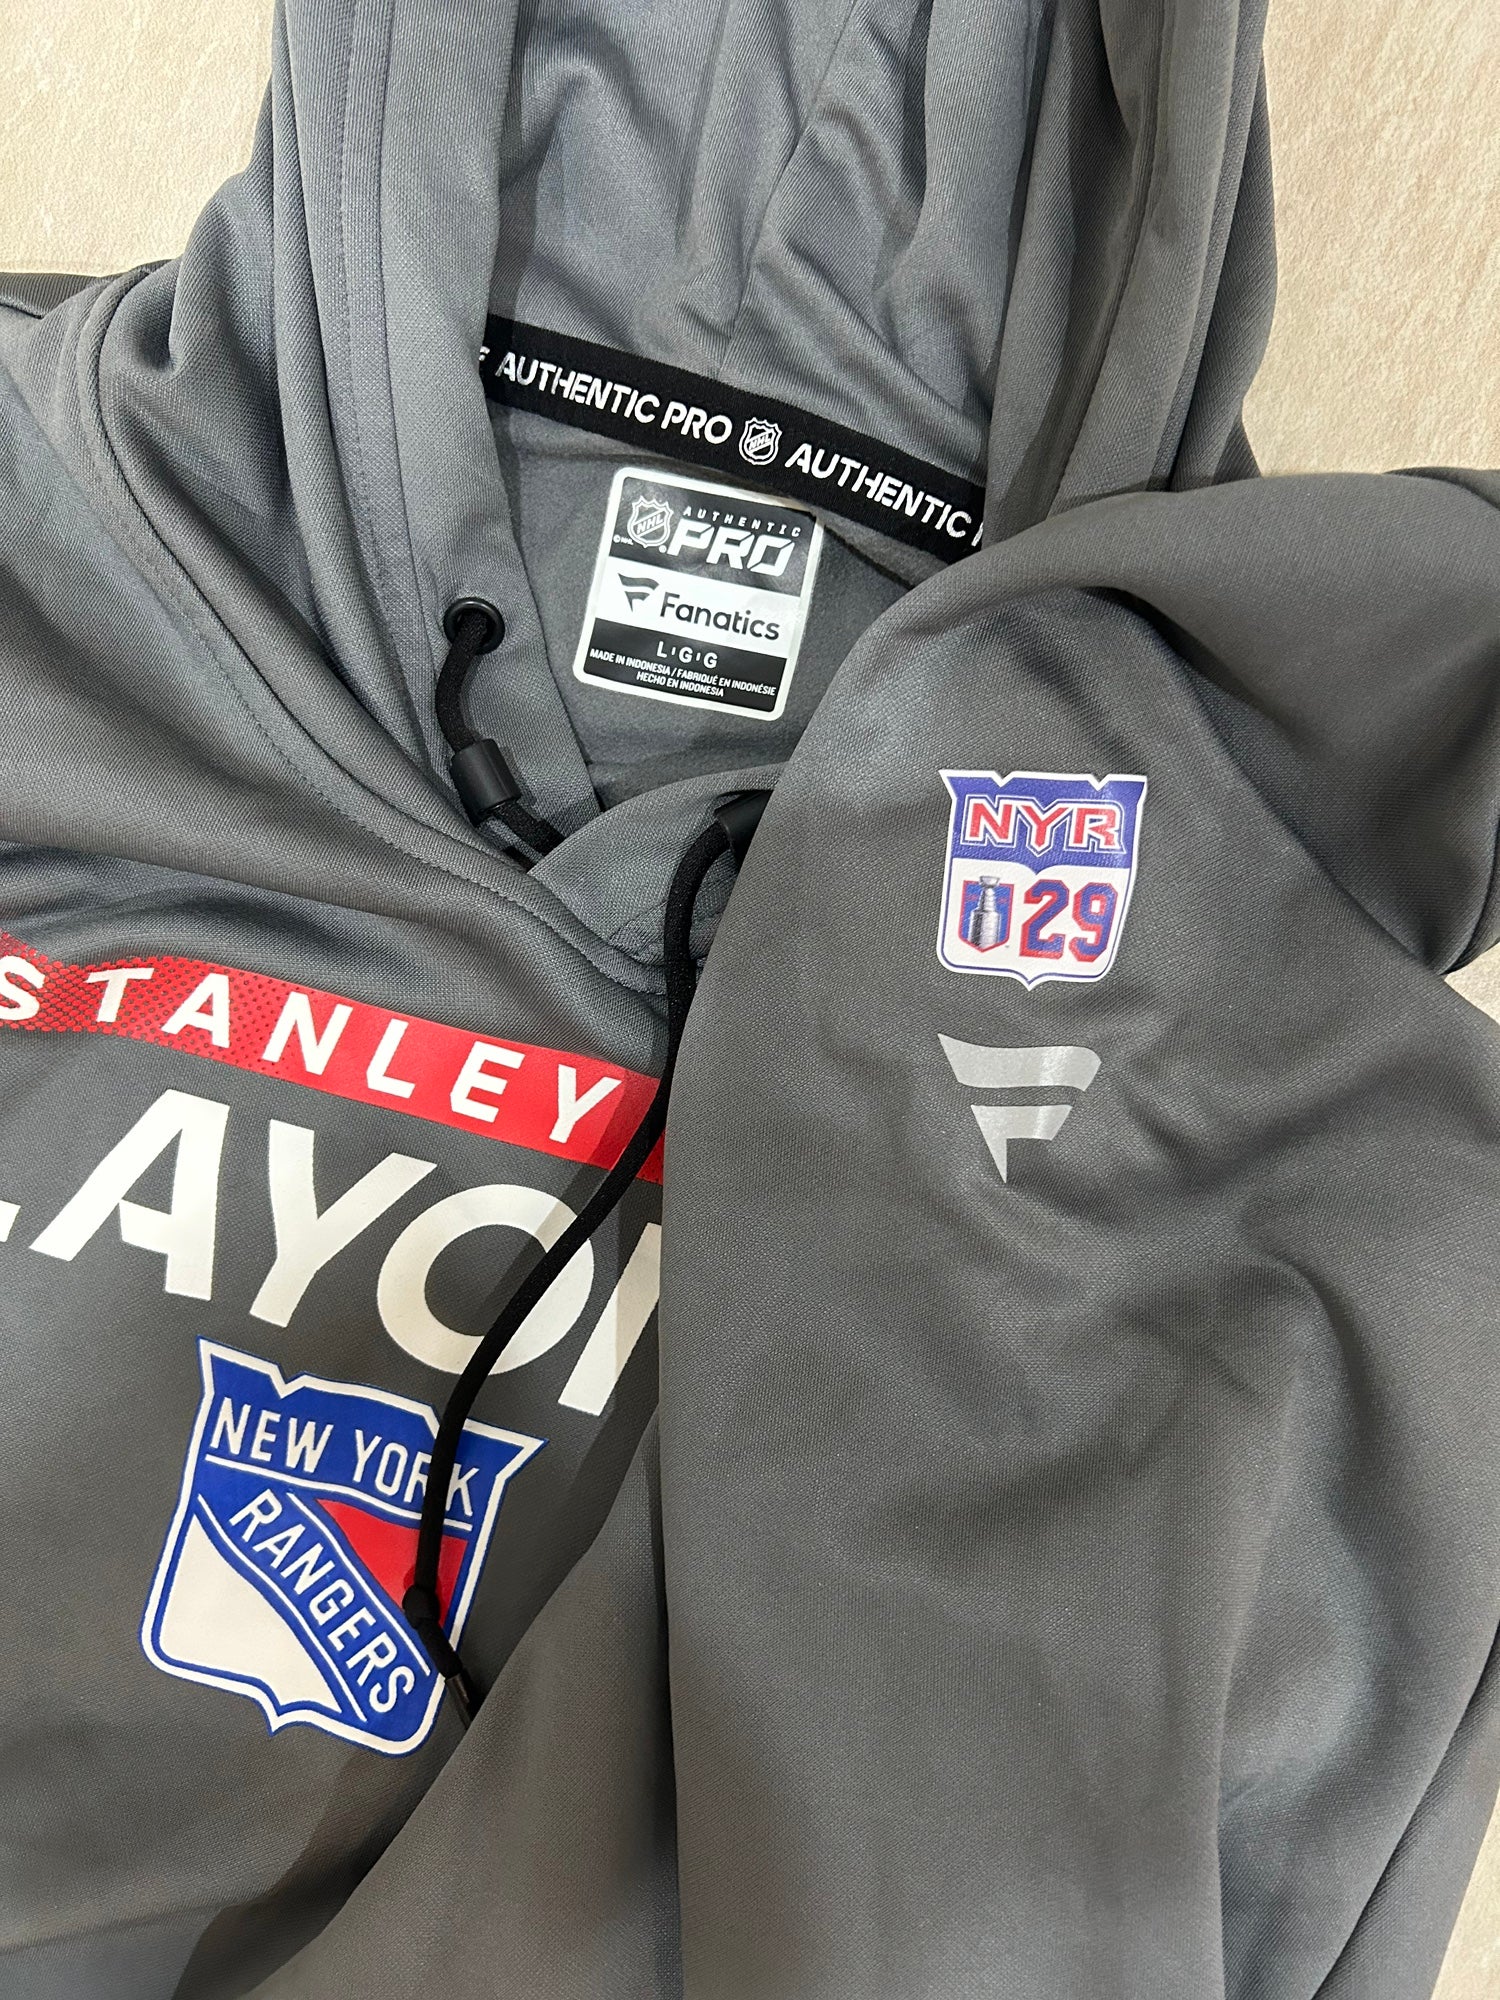 New York Rangers Sports Fan Sweatshirts for sale